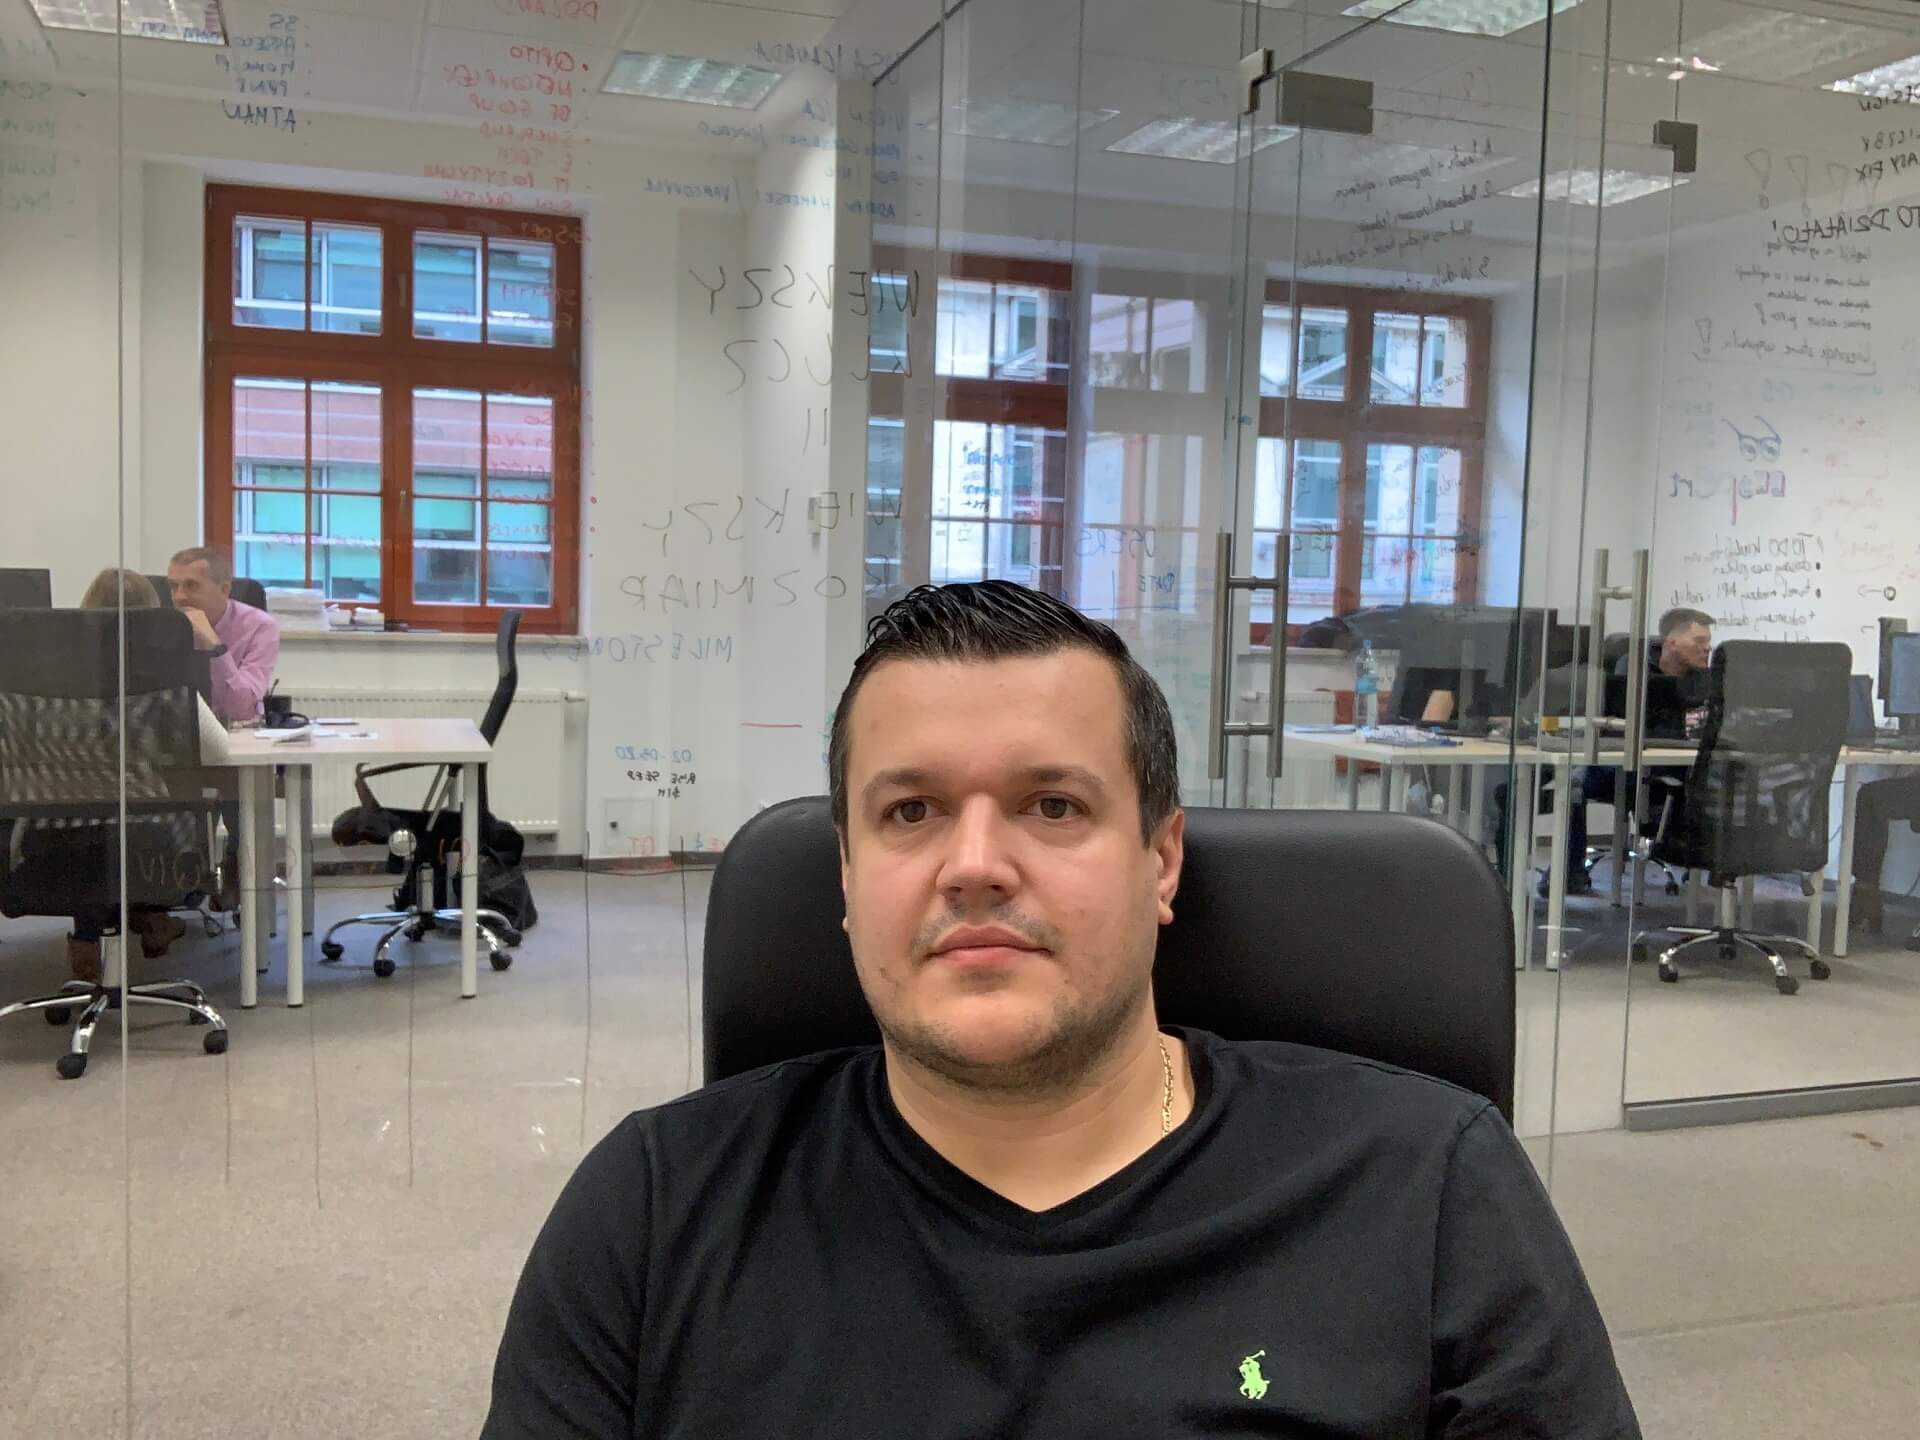 Sebastian Krakowski, founder and president of Cypherdog, working in the office